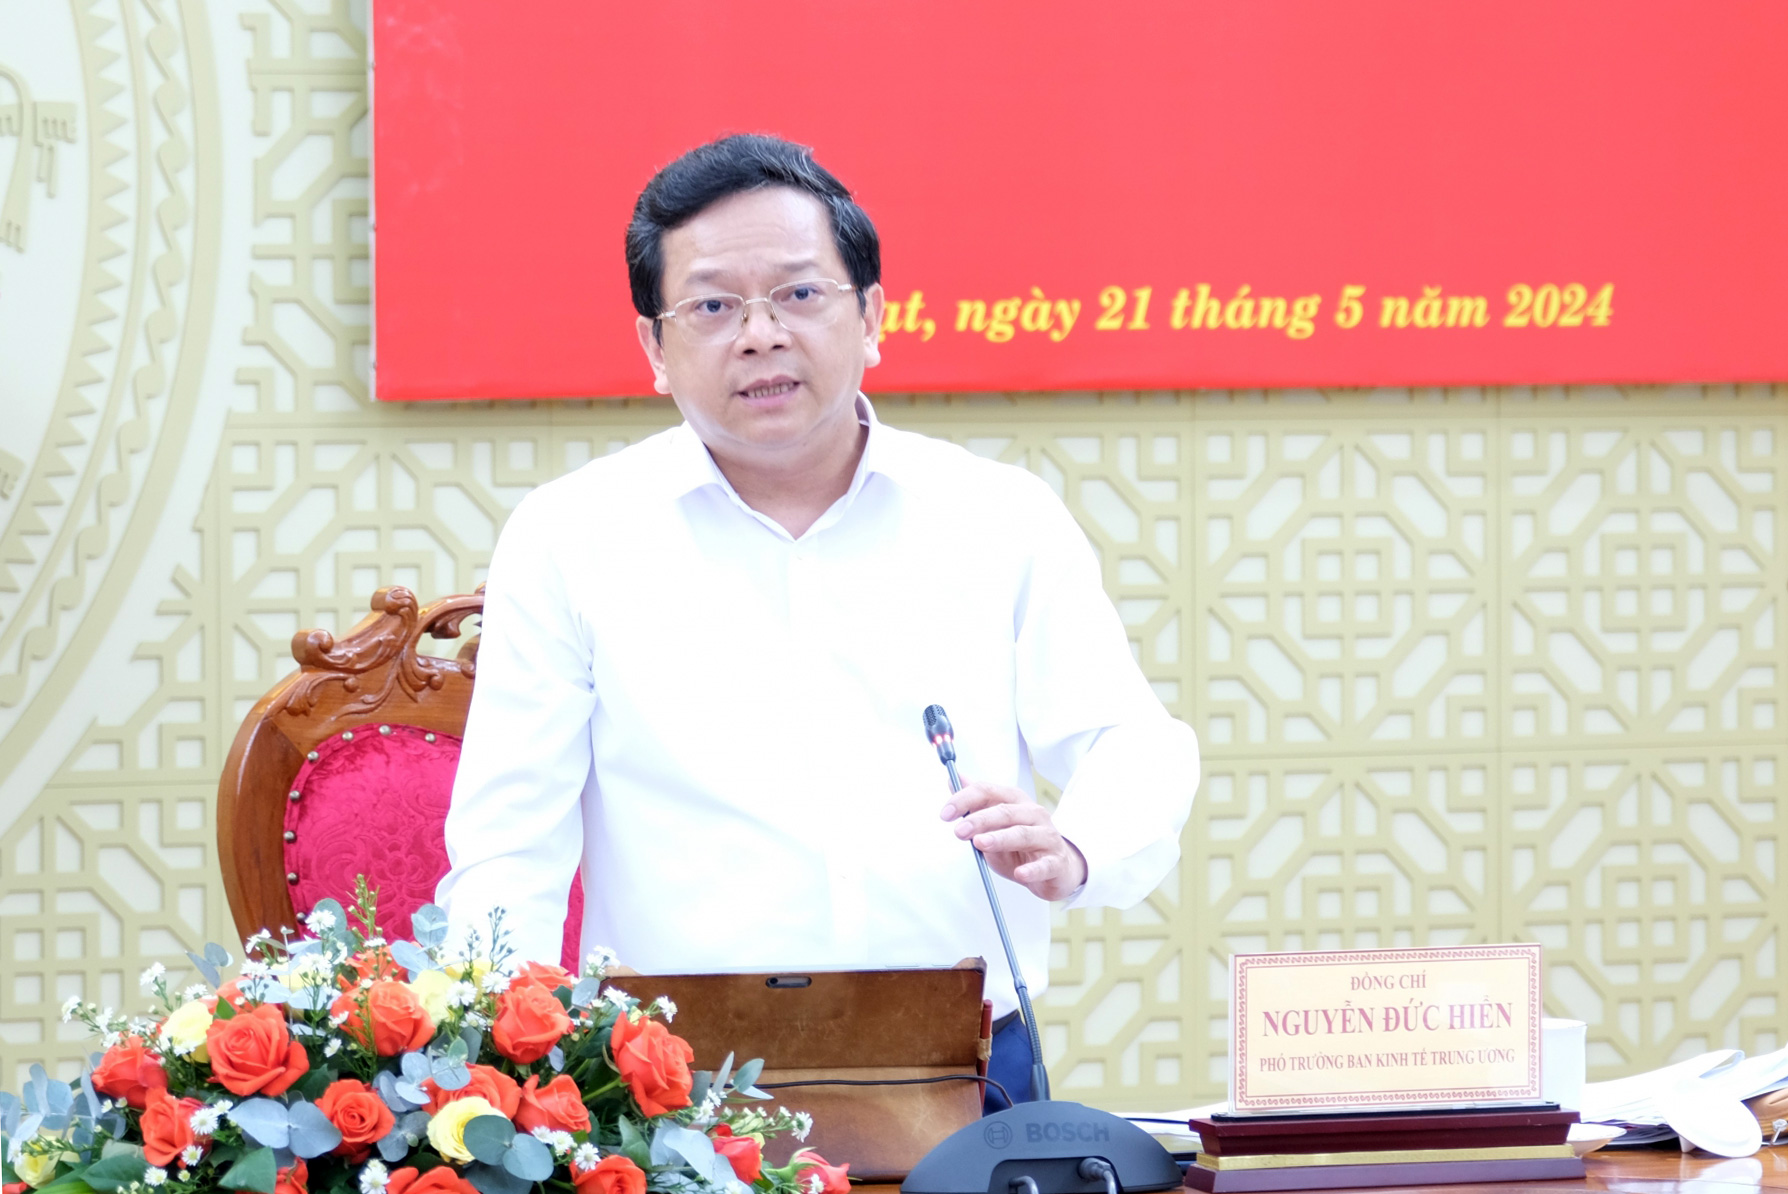 Đồng chí Nguyễn Đức Hiển - Phó Trưởng Ban Kinh tế Trung ương phát biểu định hướng nội dung buổi làm việc